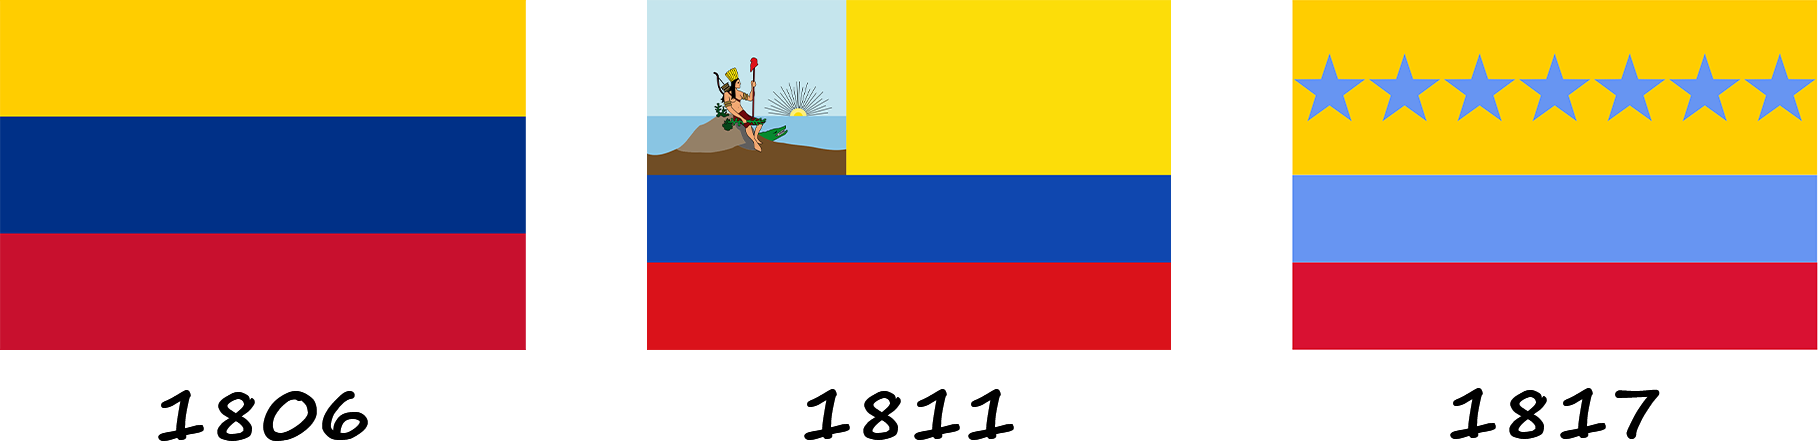 Évolution du drapeau vénézuélien